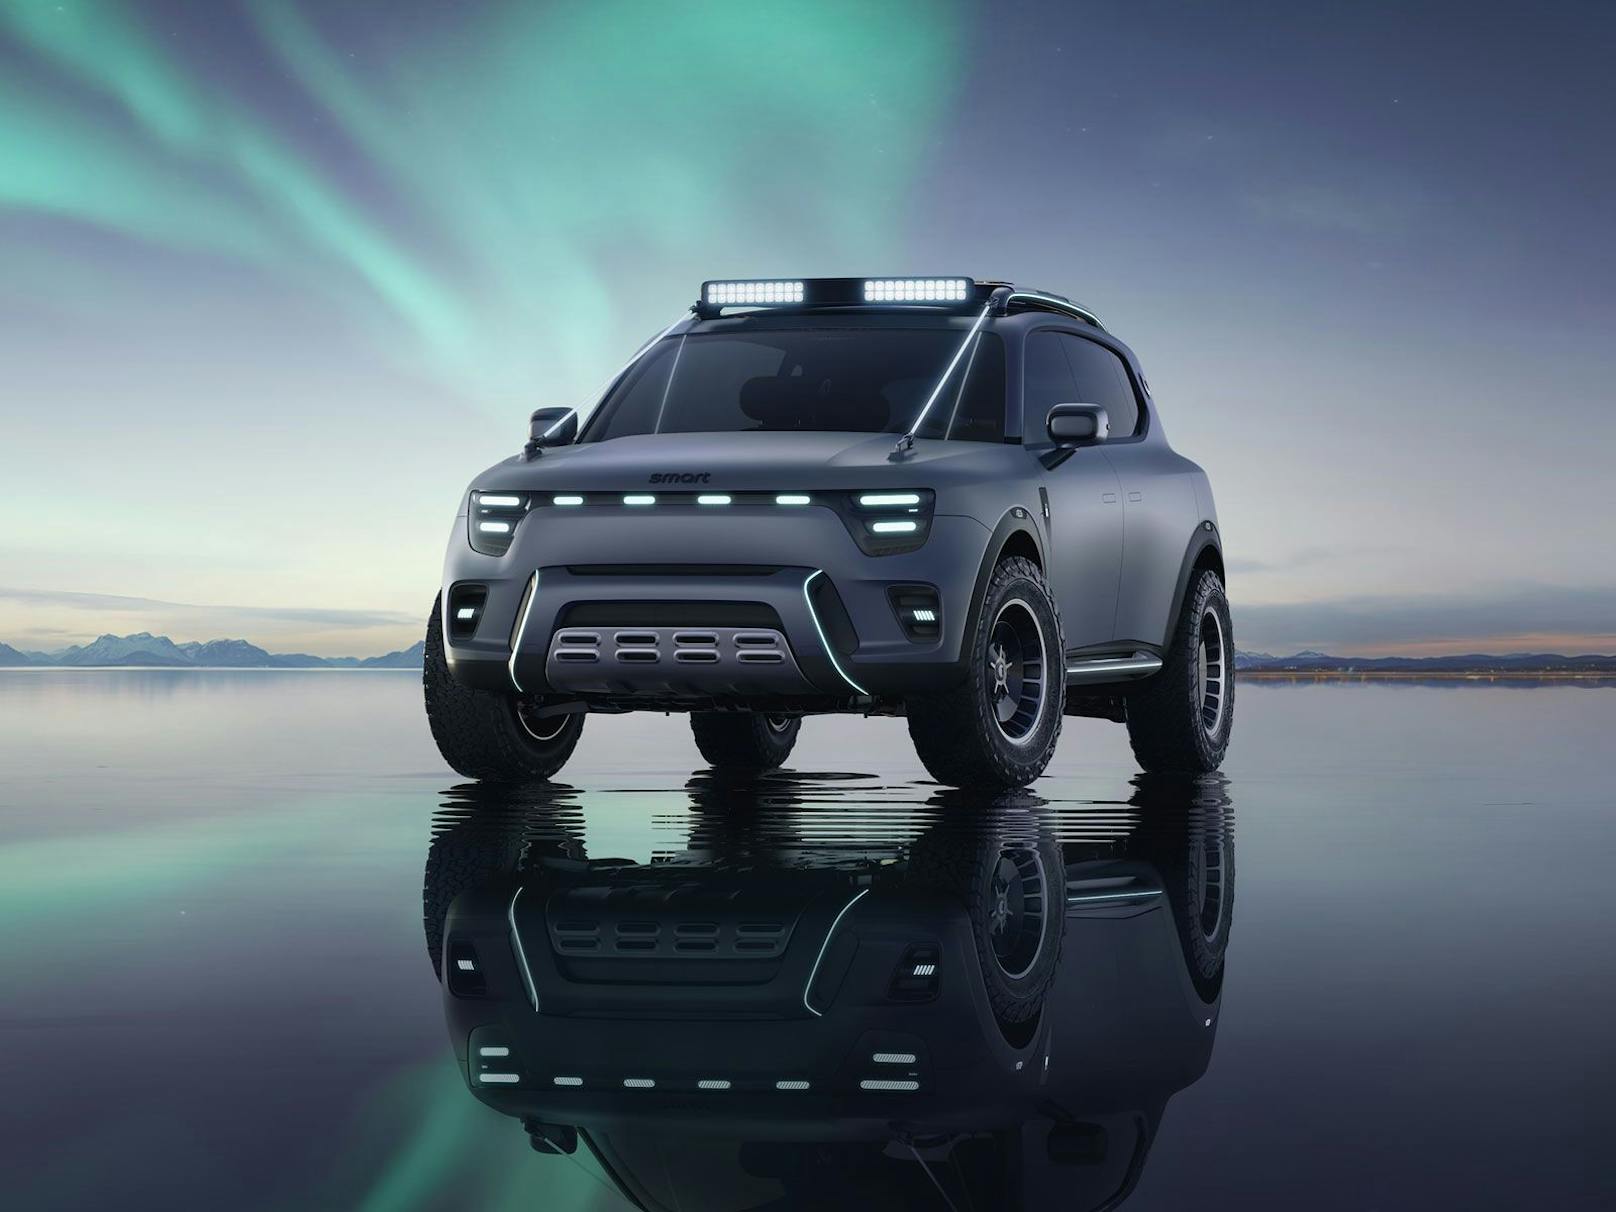 Das Smart Concept #5 präsentiert sich in völlig neuem Look als robuster Geländewagen.